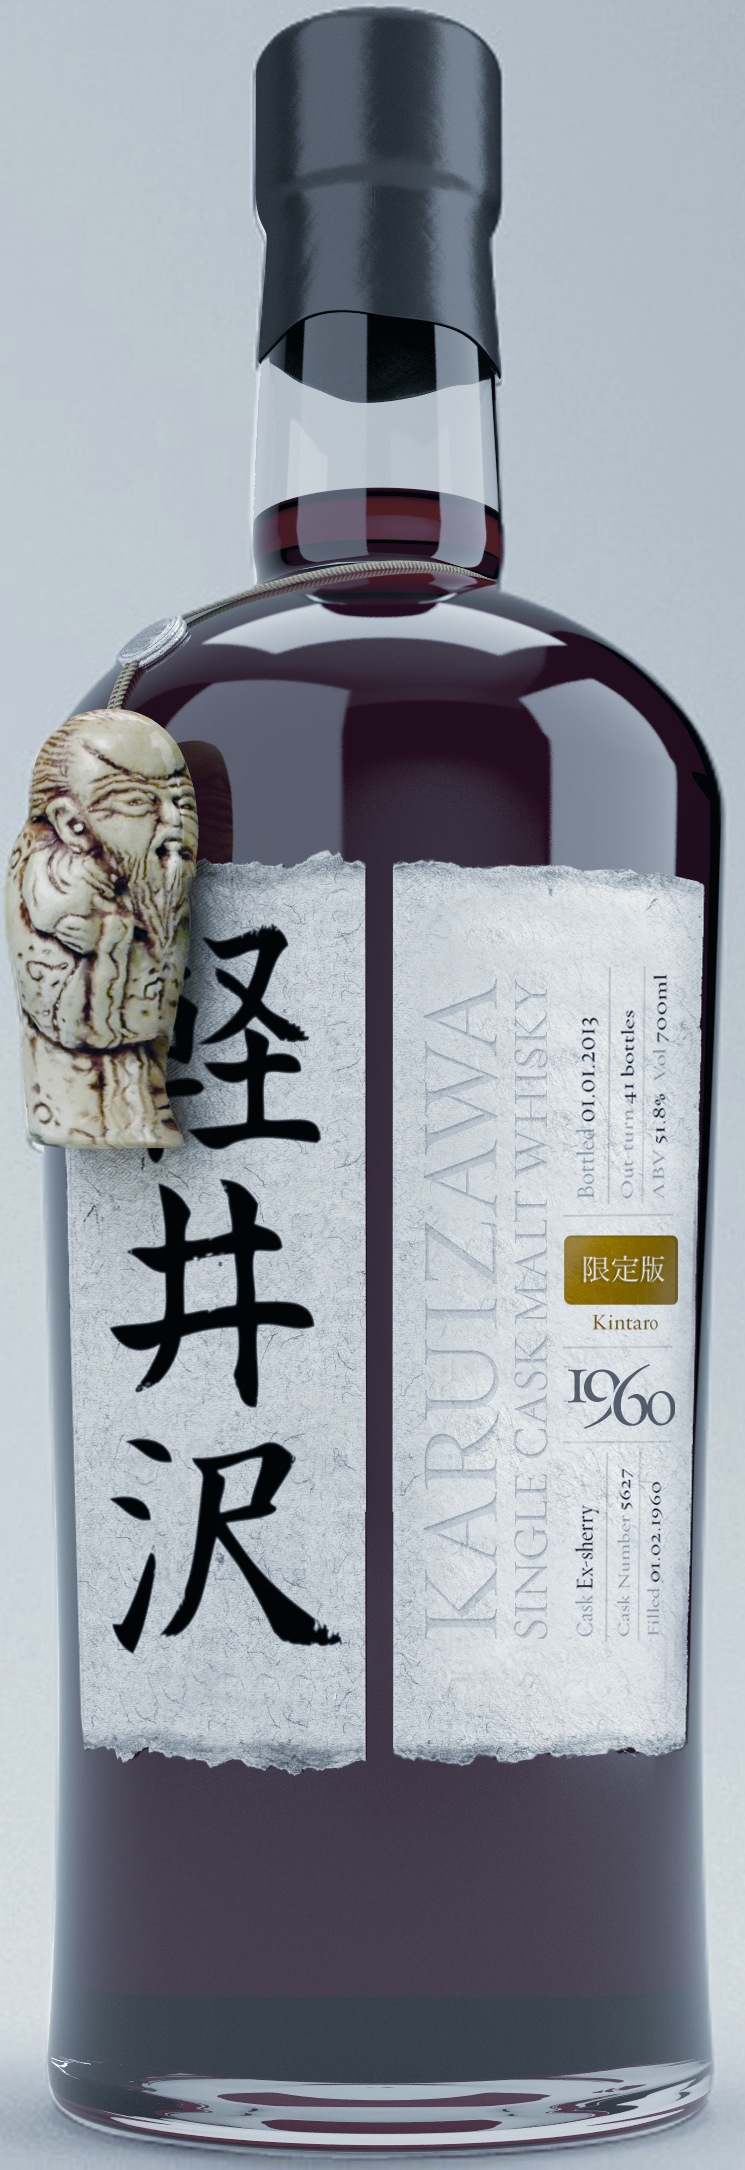 Japanese Karuizawa Whisky Bottle